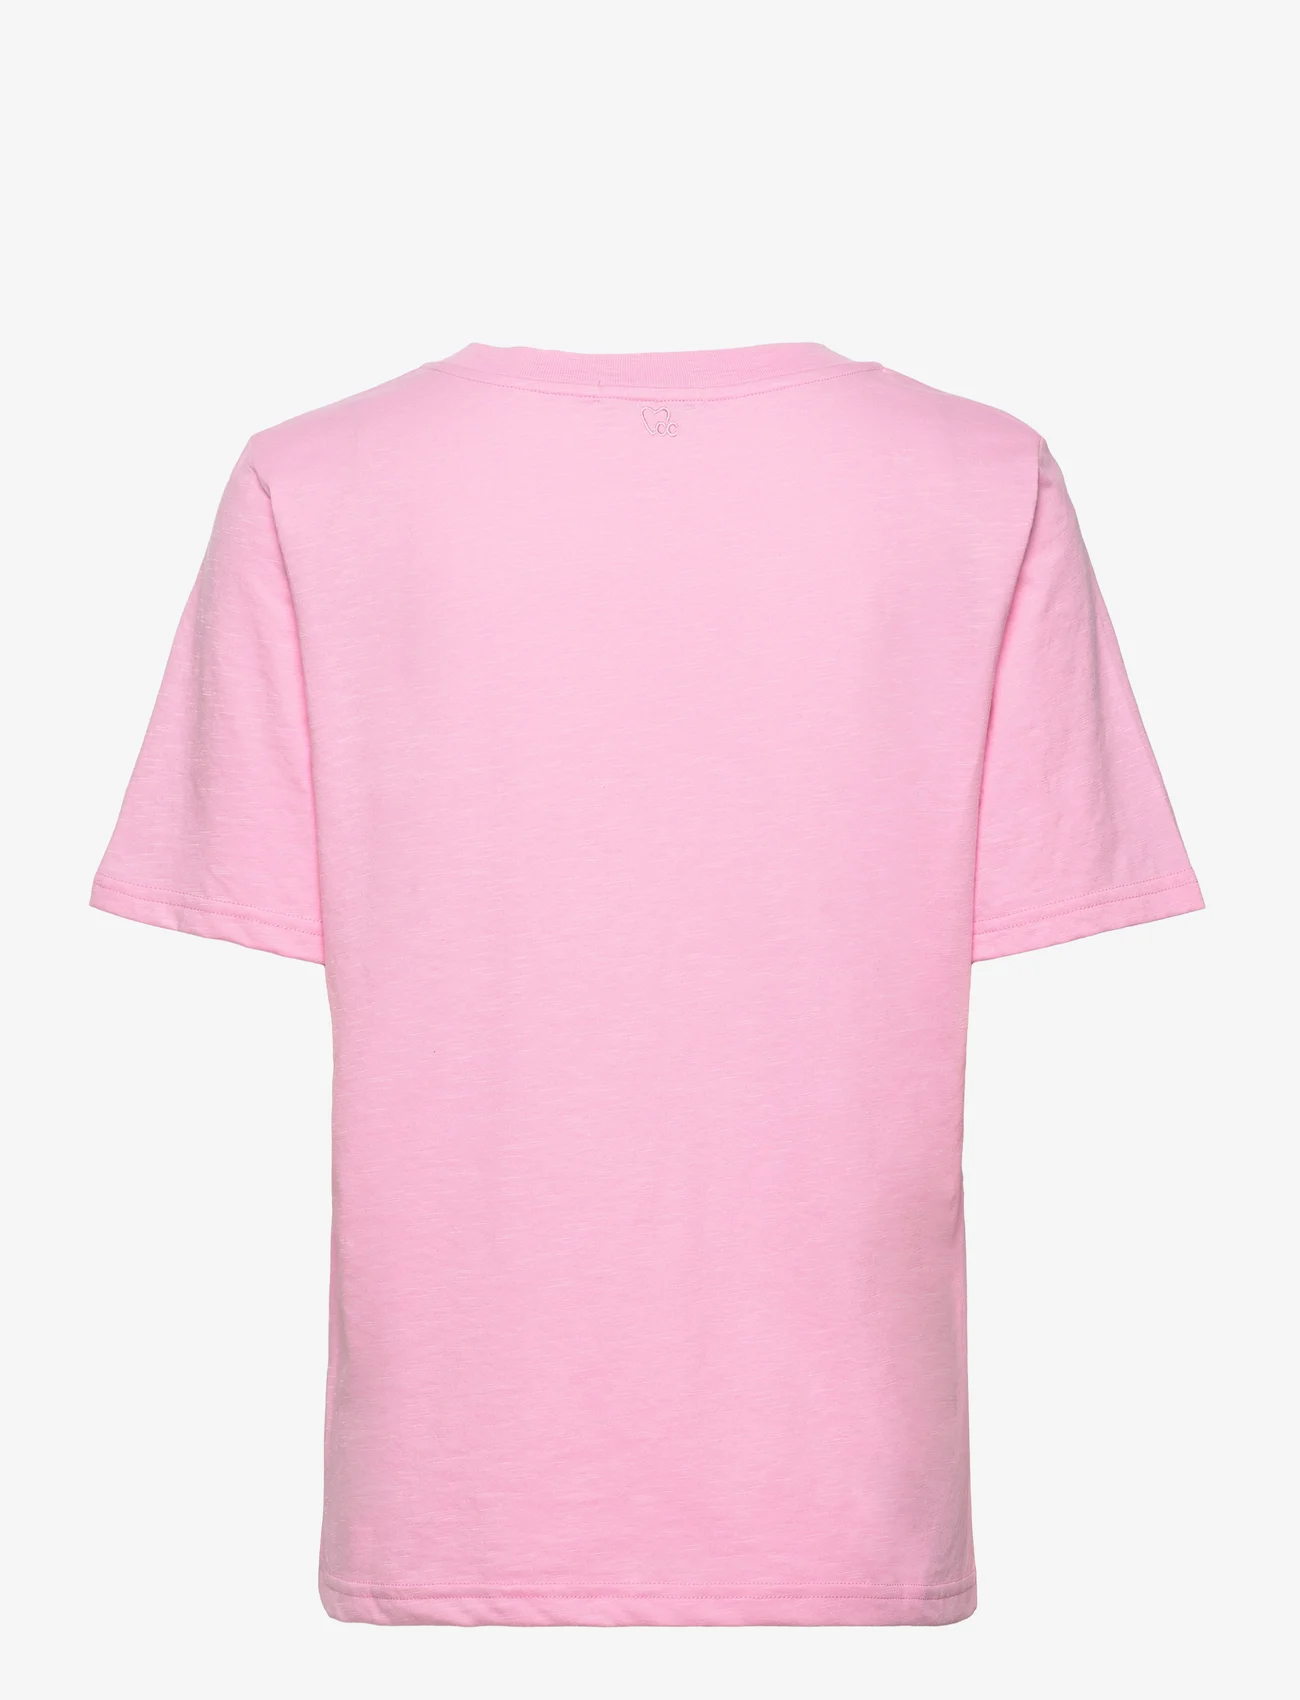 Coster Copenhagen - CC Heart regular t-shirt - laagste prijzen - baby pink - 1